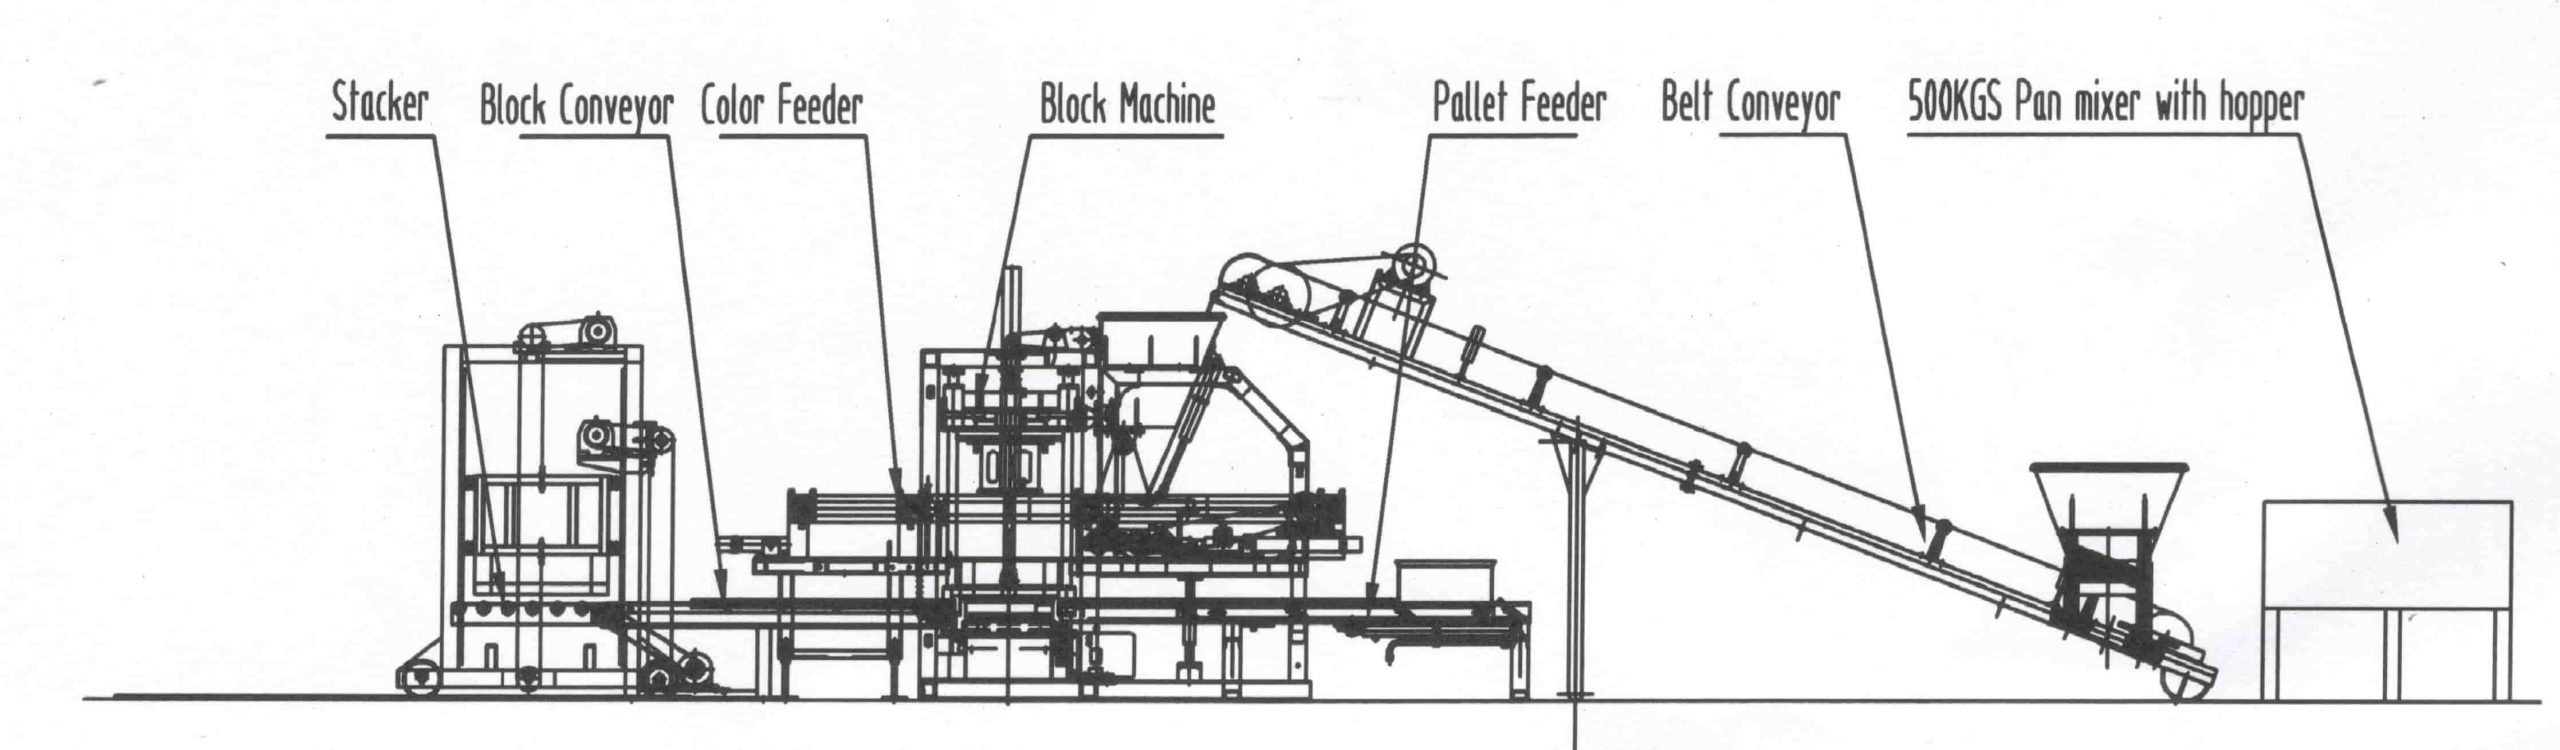 Automatic Concrete Paver Block Making Machine Layout B